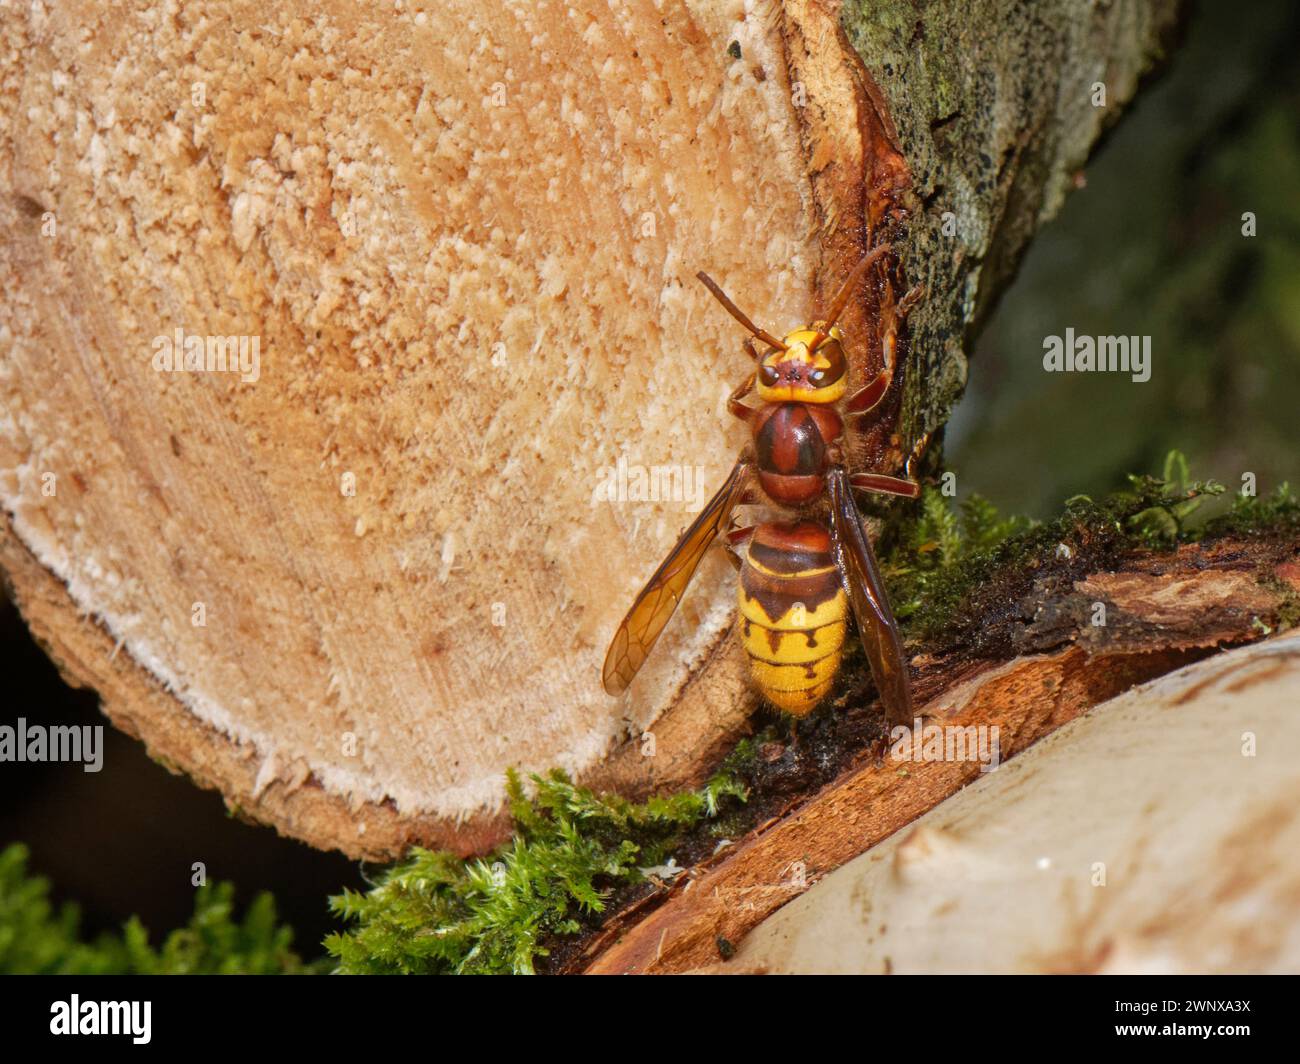 Avispón europeo (vespa crabro) alimentándose de savia azucarada de la capa interna de floema de corteza expuesta en troncos aserrados forman un árbol de sauce recientemente caído, Reino Unido. Foto de stock